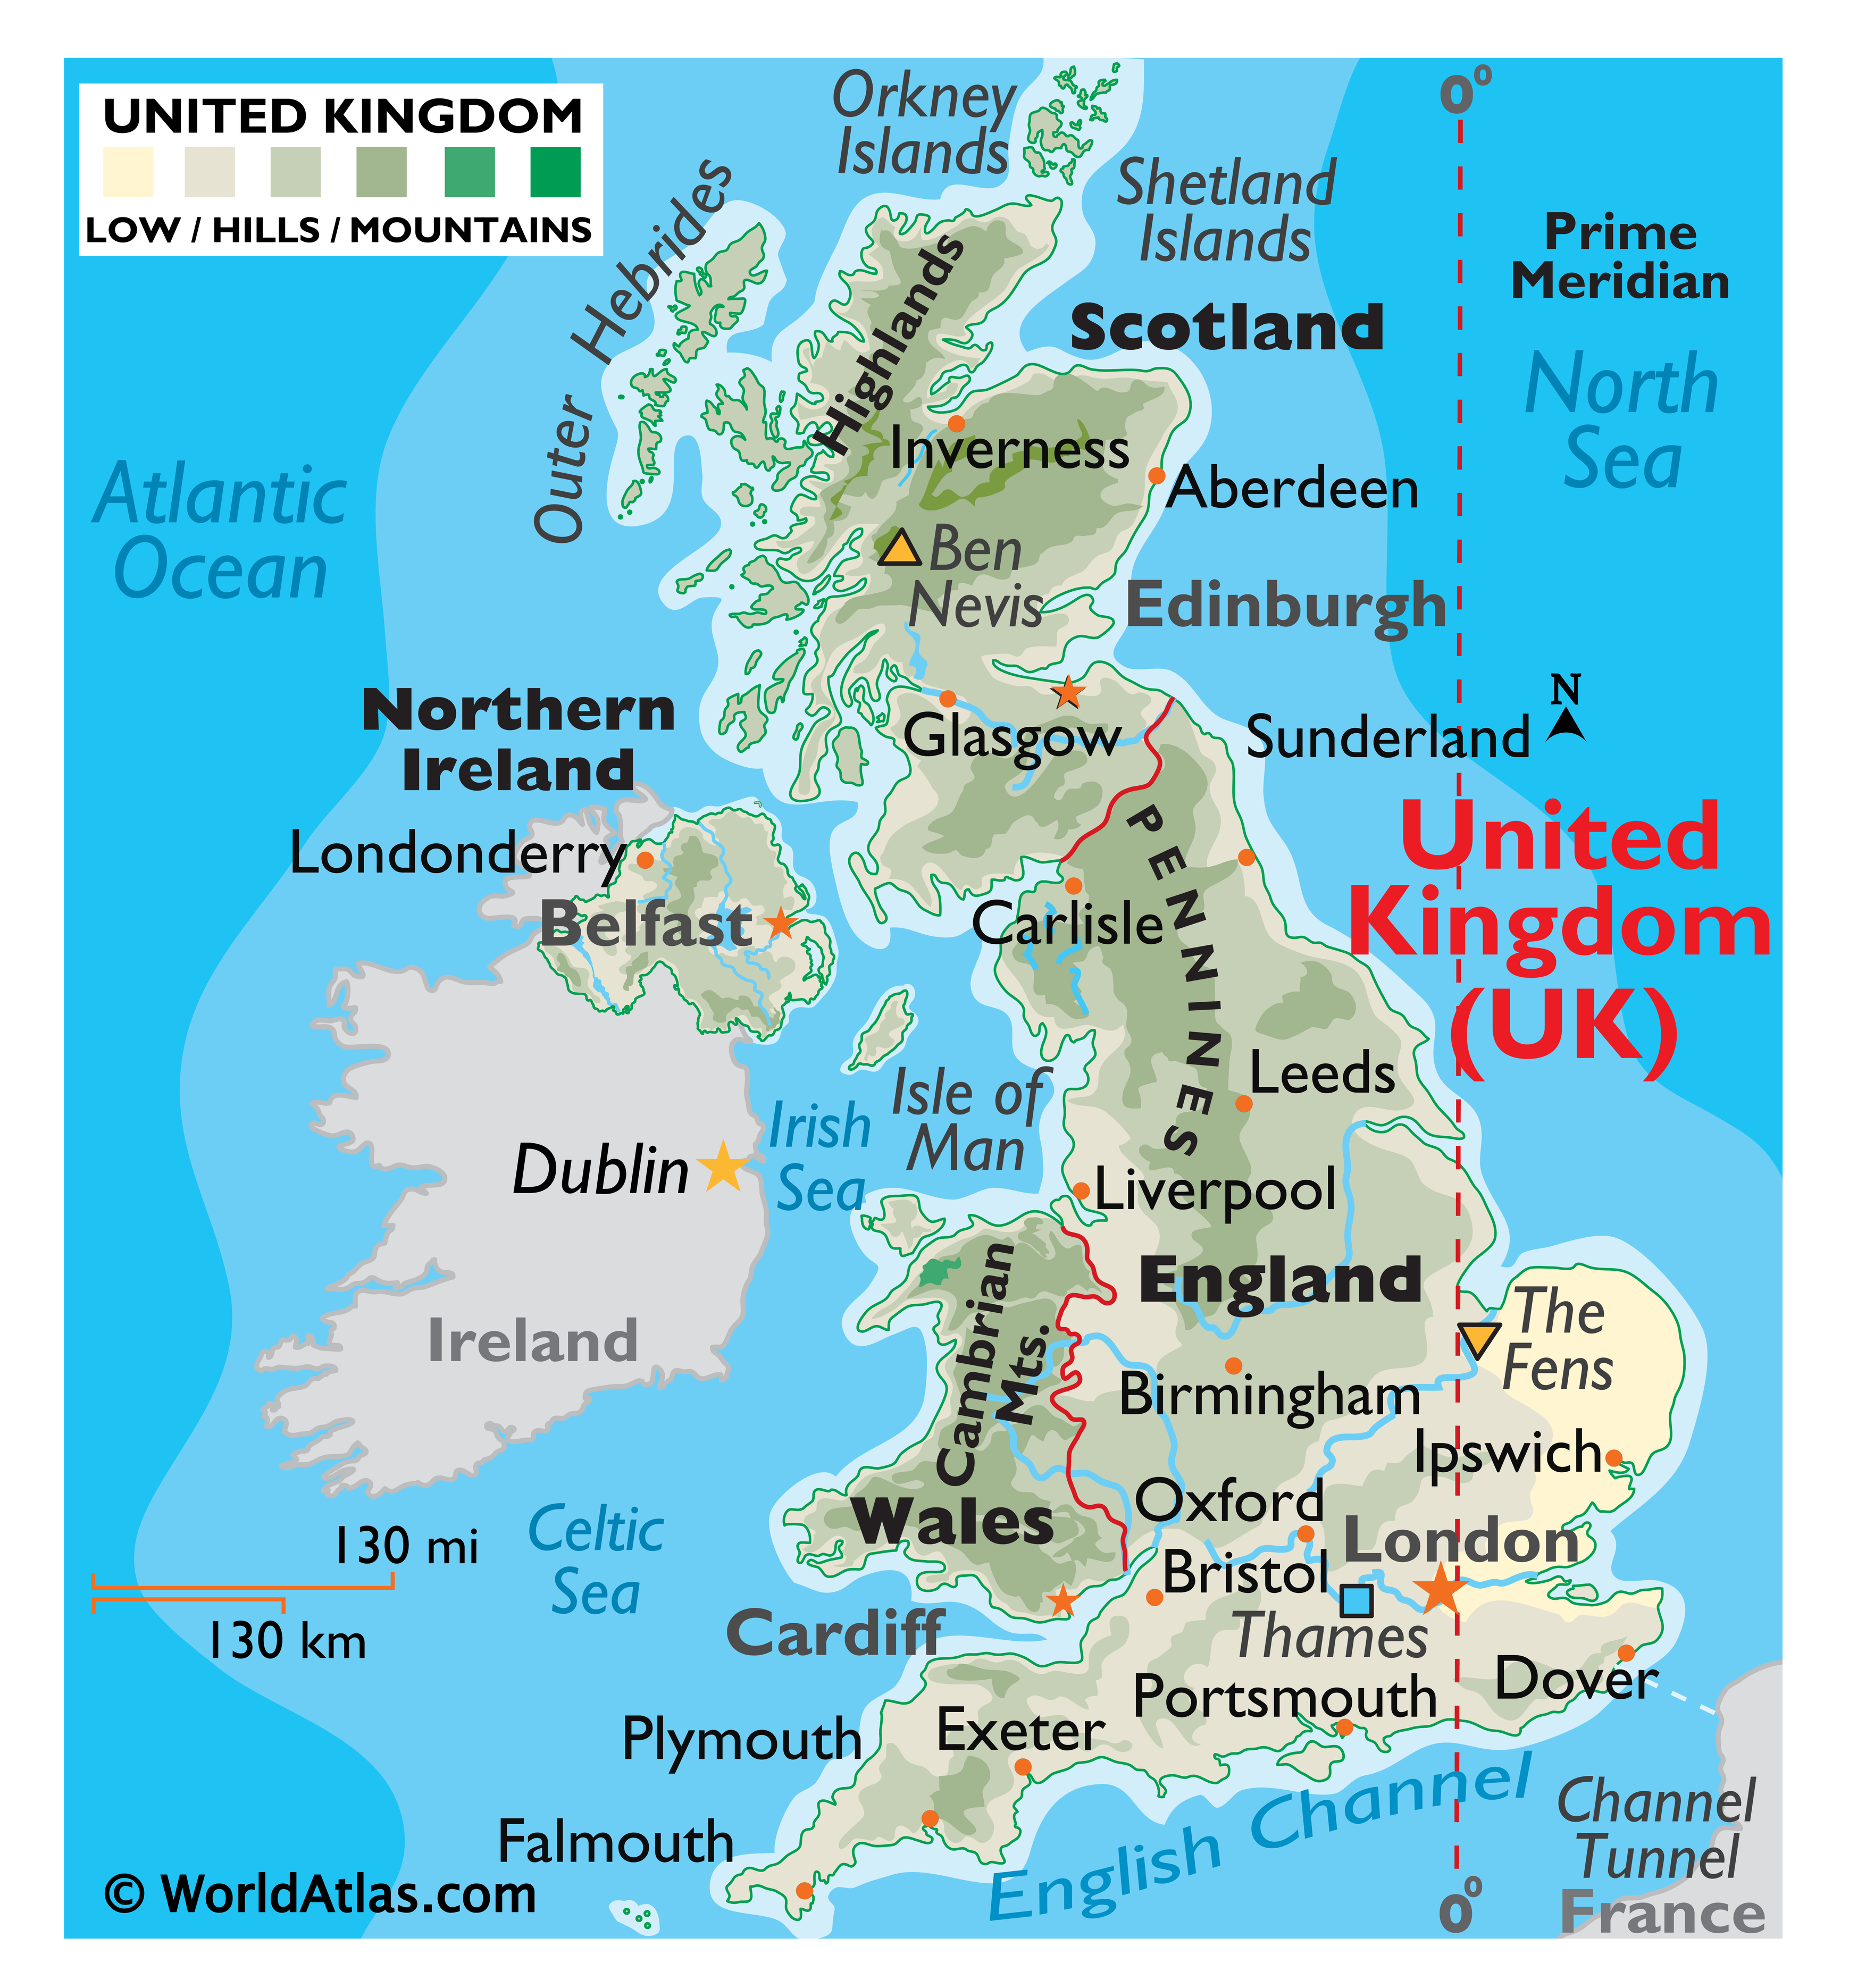 karta uk Uk Map / Geography of United Kingdom / Map of United Kingdom  karta uk